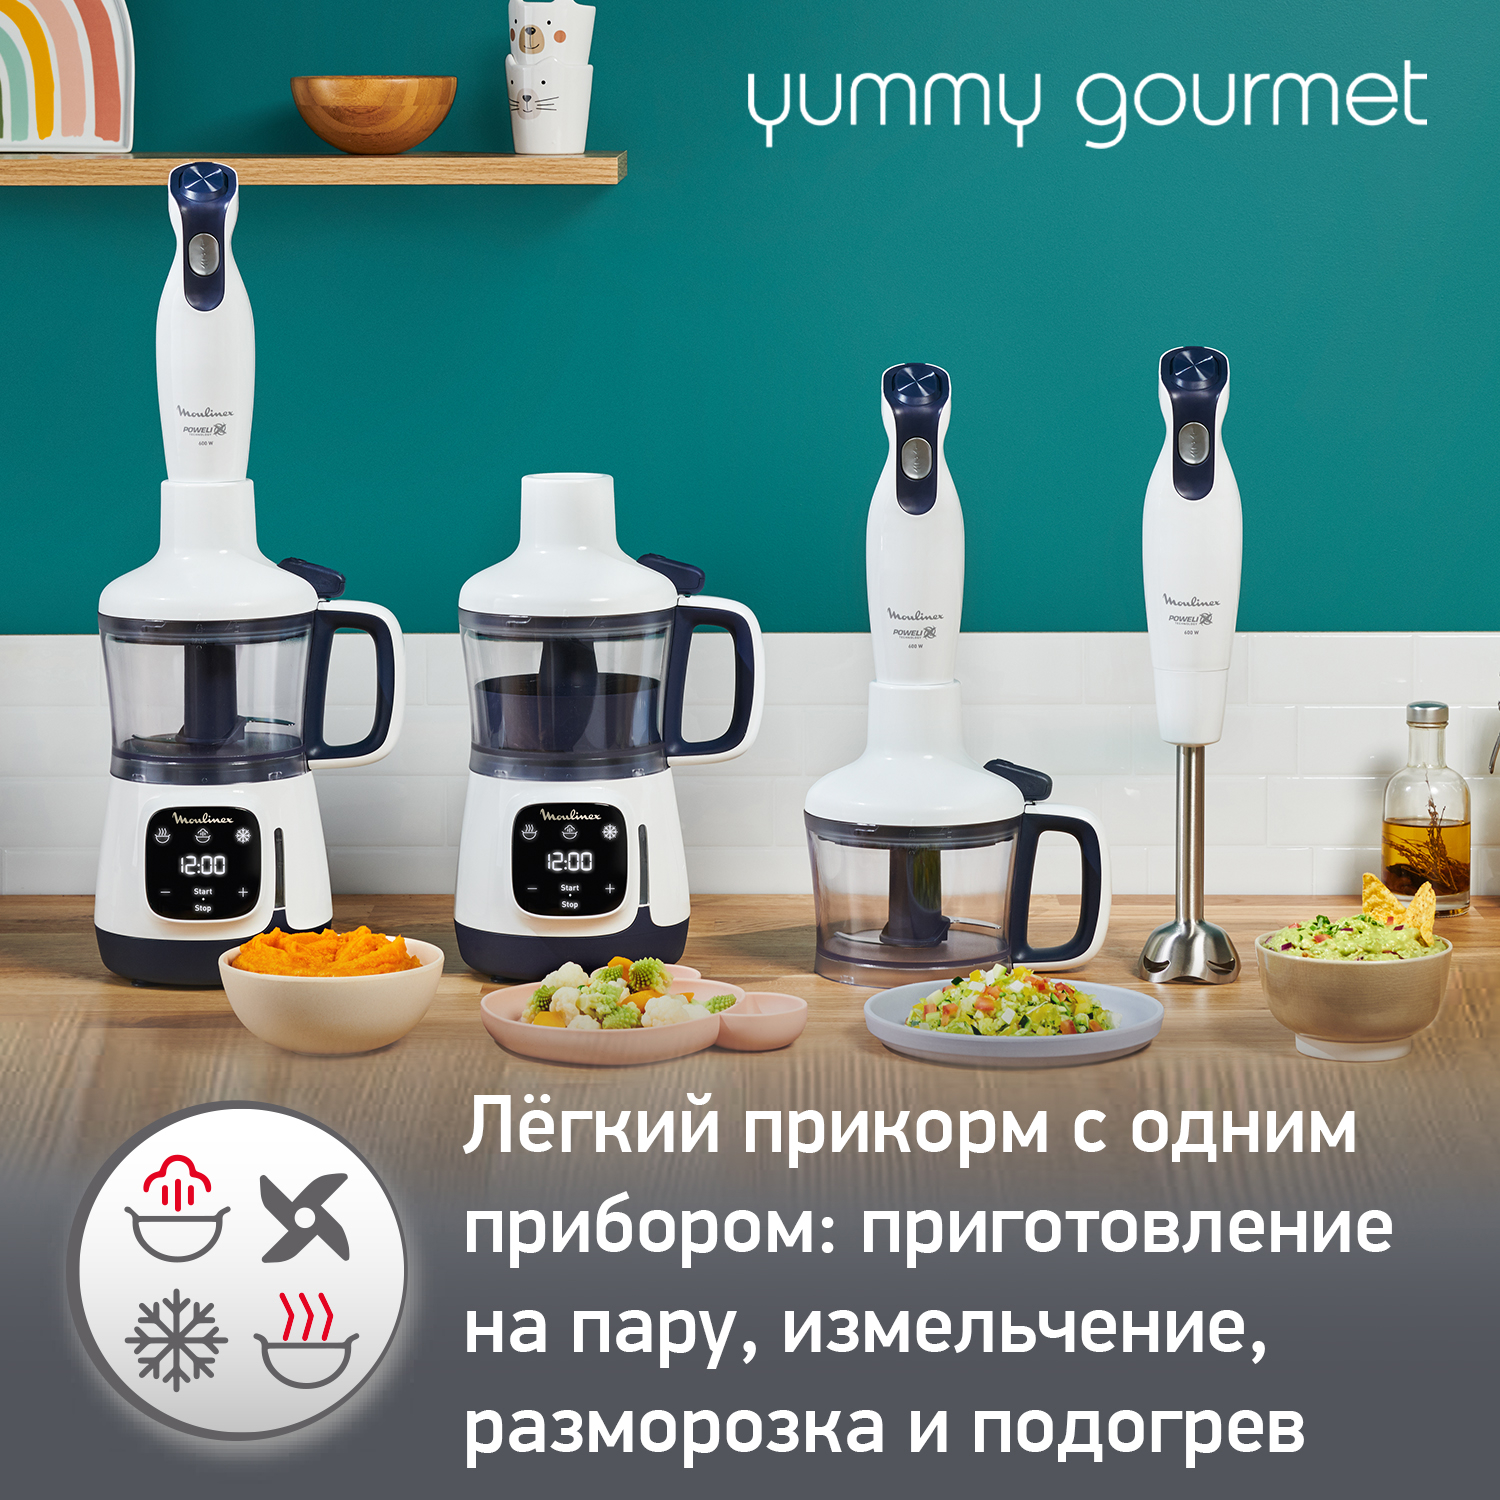 Универсальный набор 4 в 1 Moulinex Yummy Gourmet DD55W110, для детского питания